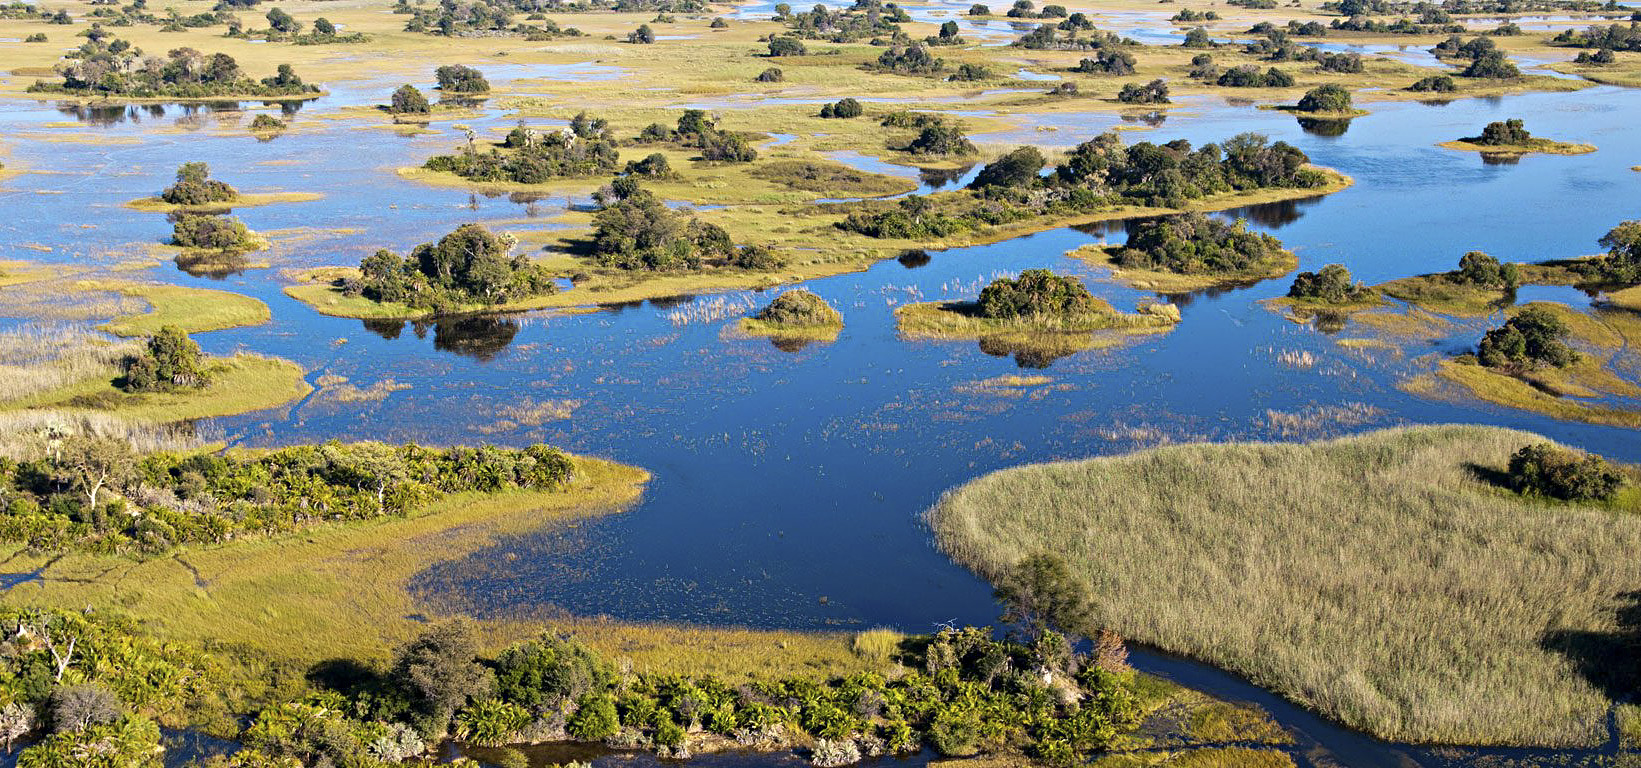 Okavango aerial